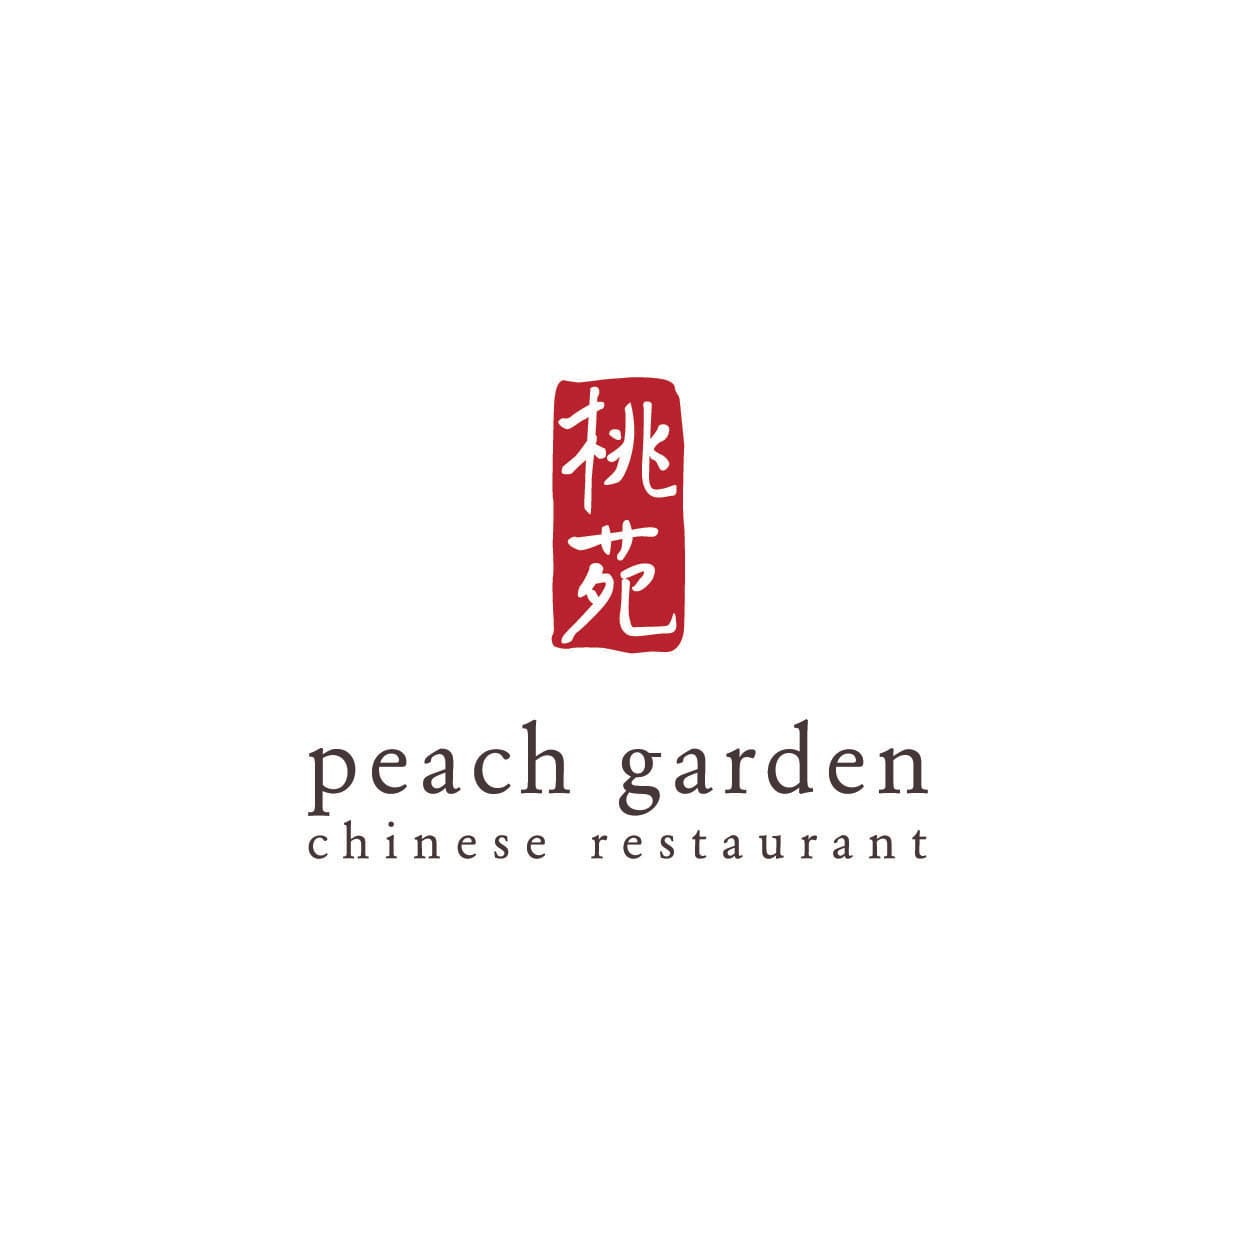 $20 Cash Voucher at Peach Garden - Get Deals, Cashback and Rewards with ShopBack GO